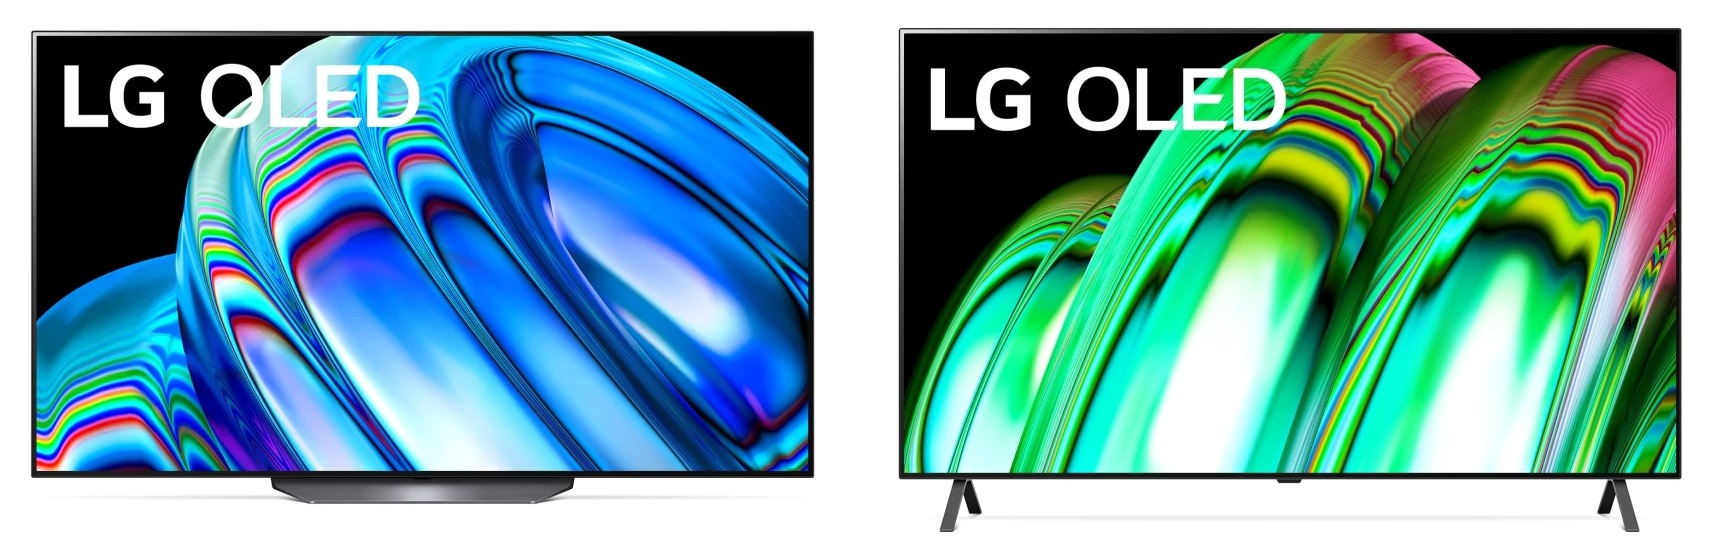 LG B2 A2 OLED TV